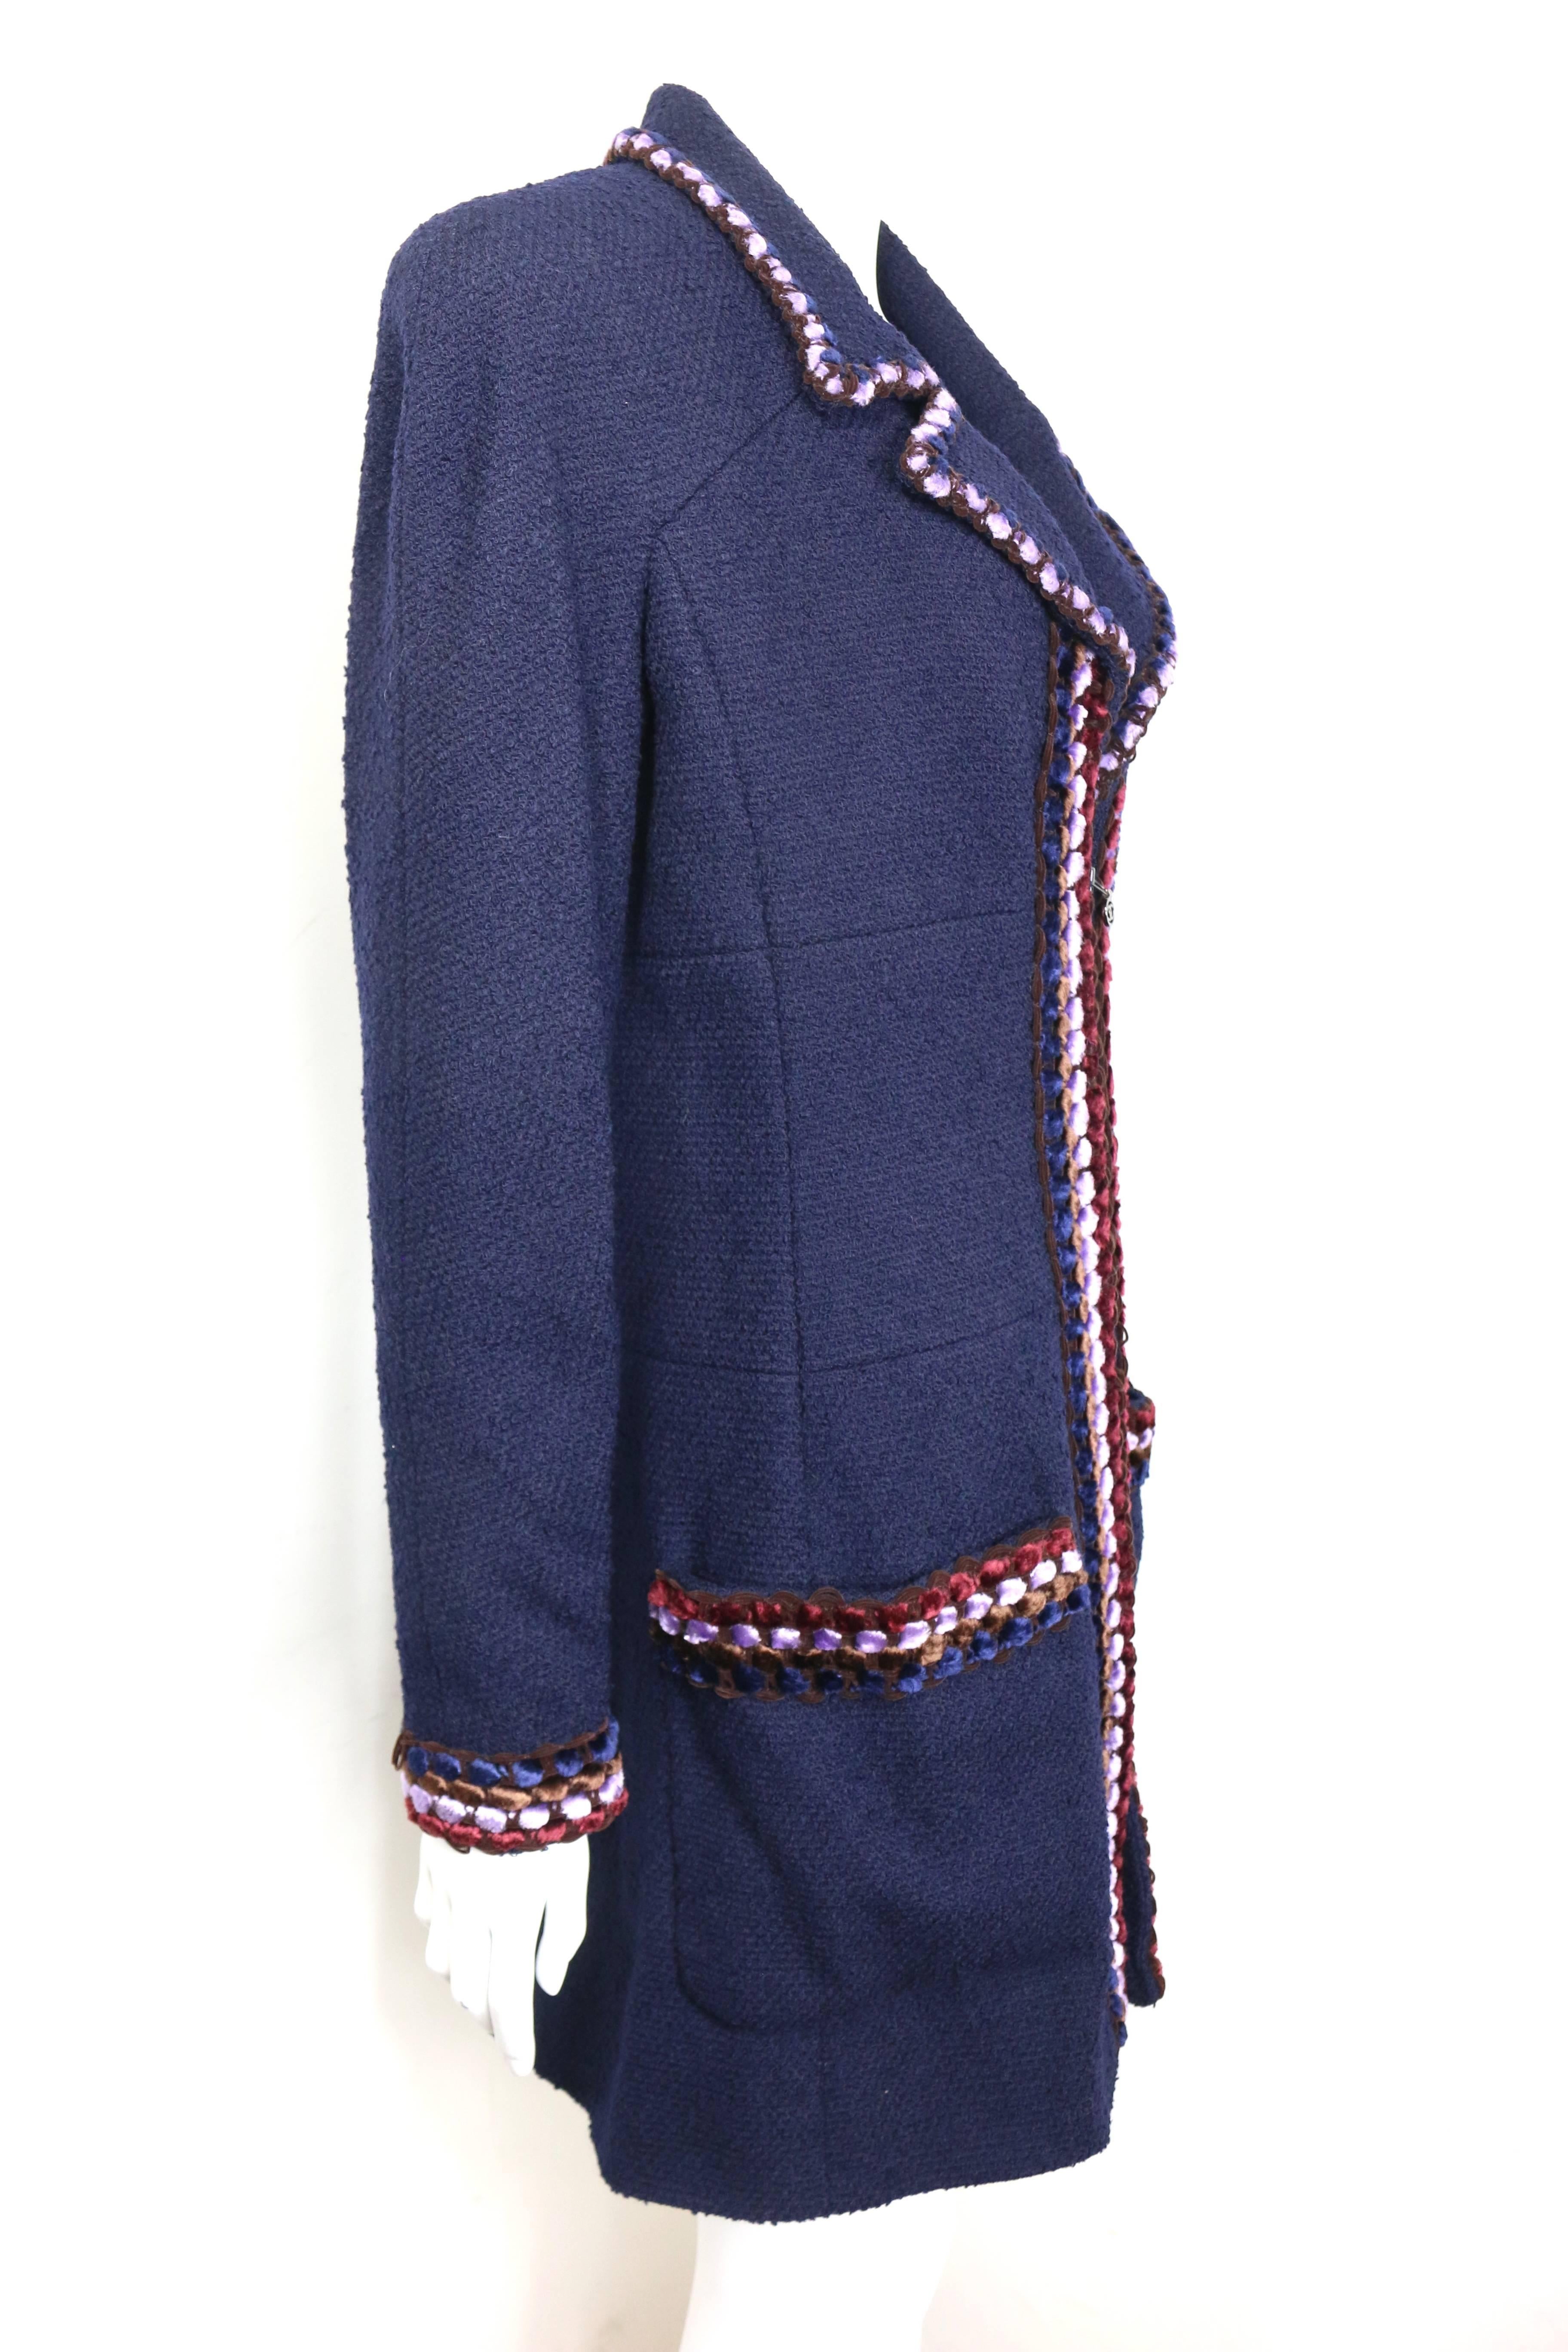 - Manteau Chanel bleu marine Paris Chenille pom pom bouclé en tweed de laine de la collection automne 1997.   

-  fermeture zippée sur le devant avec le logo 